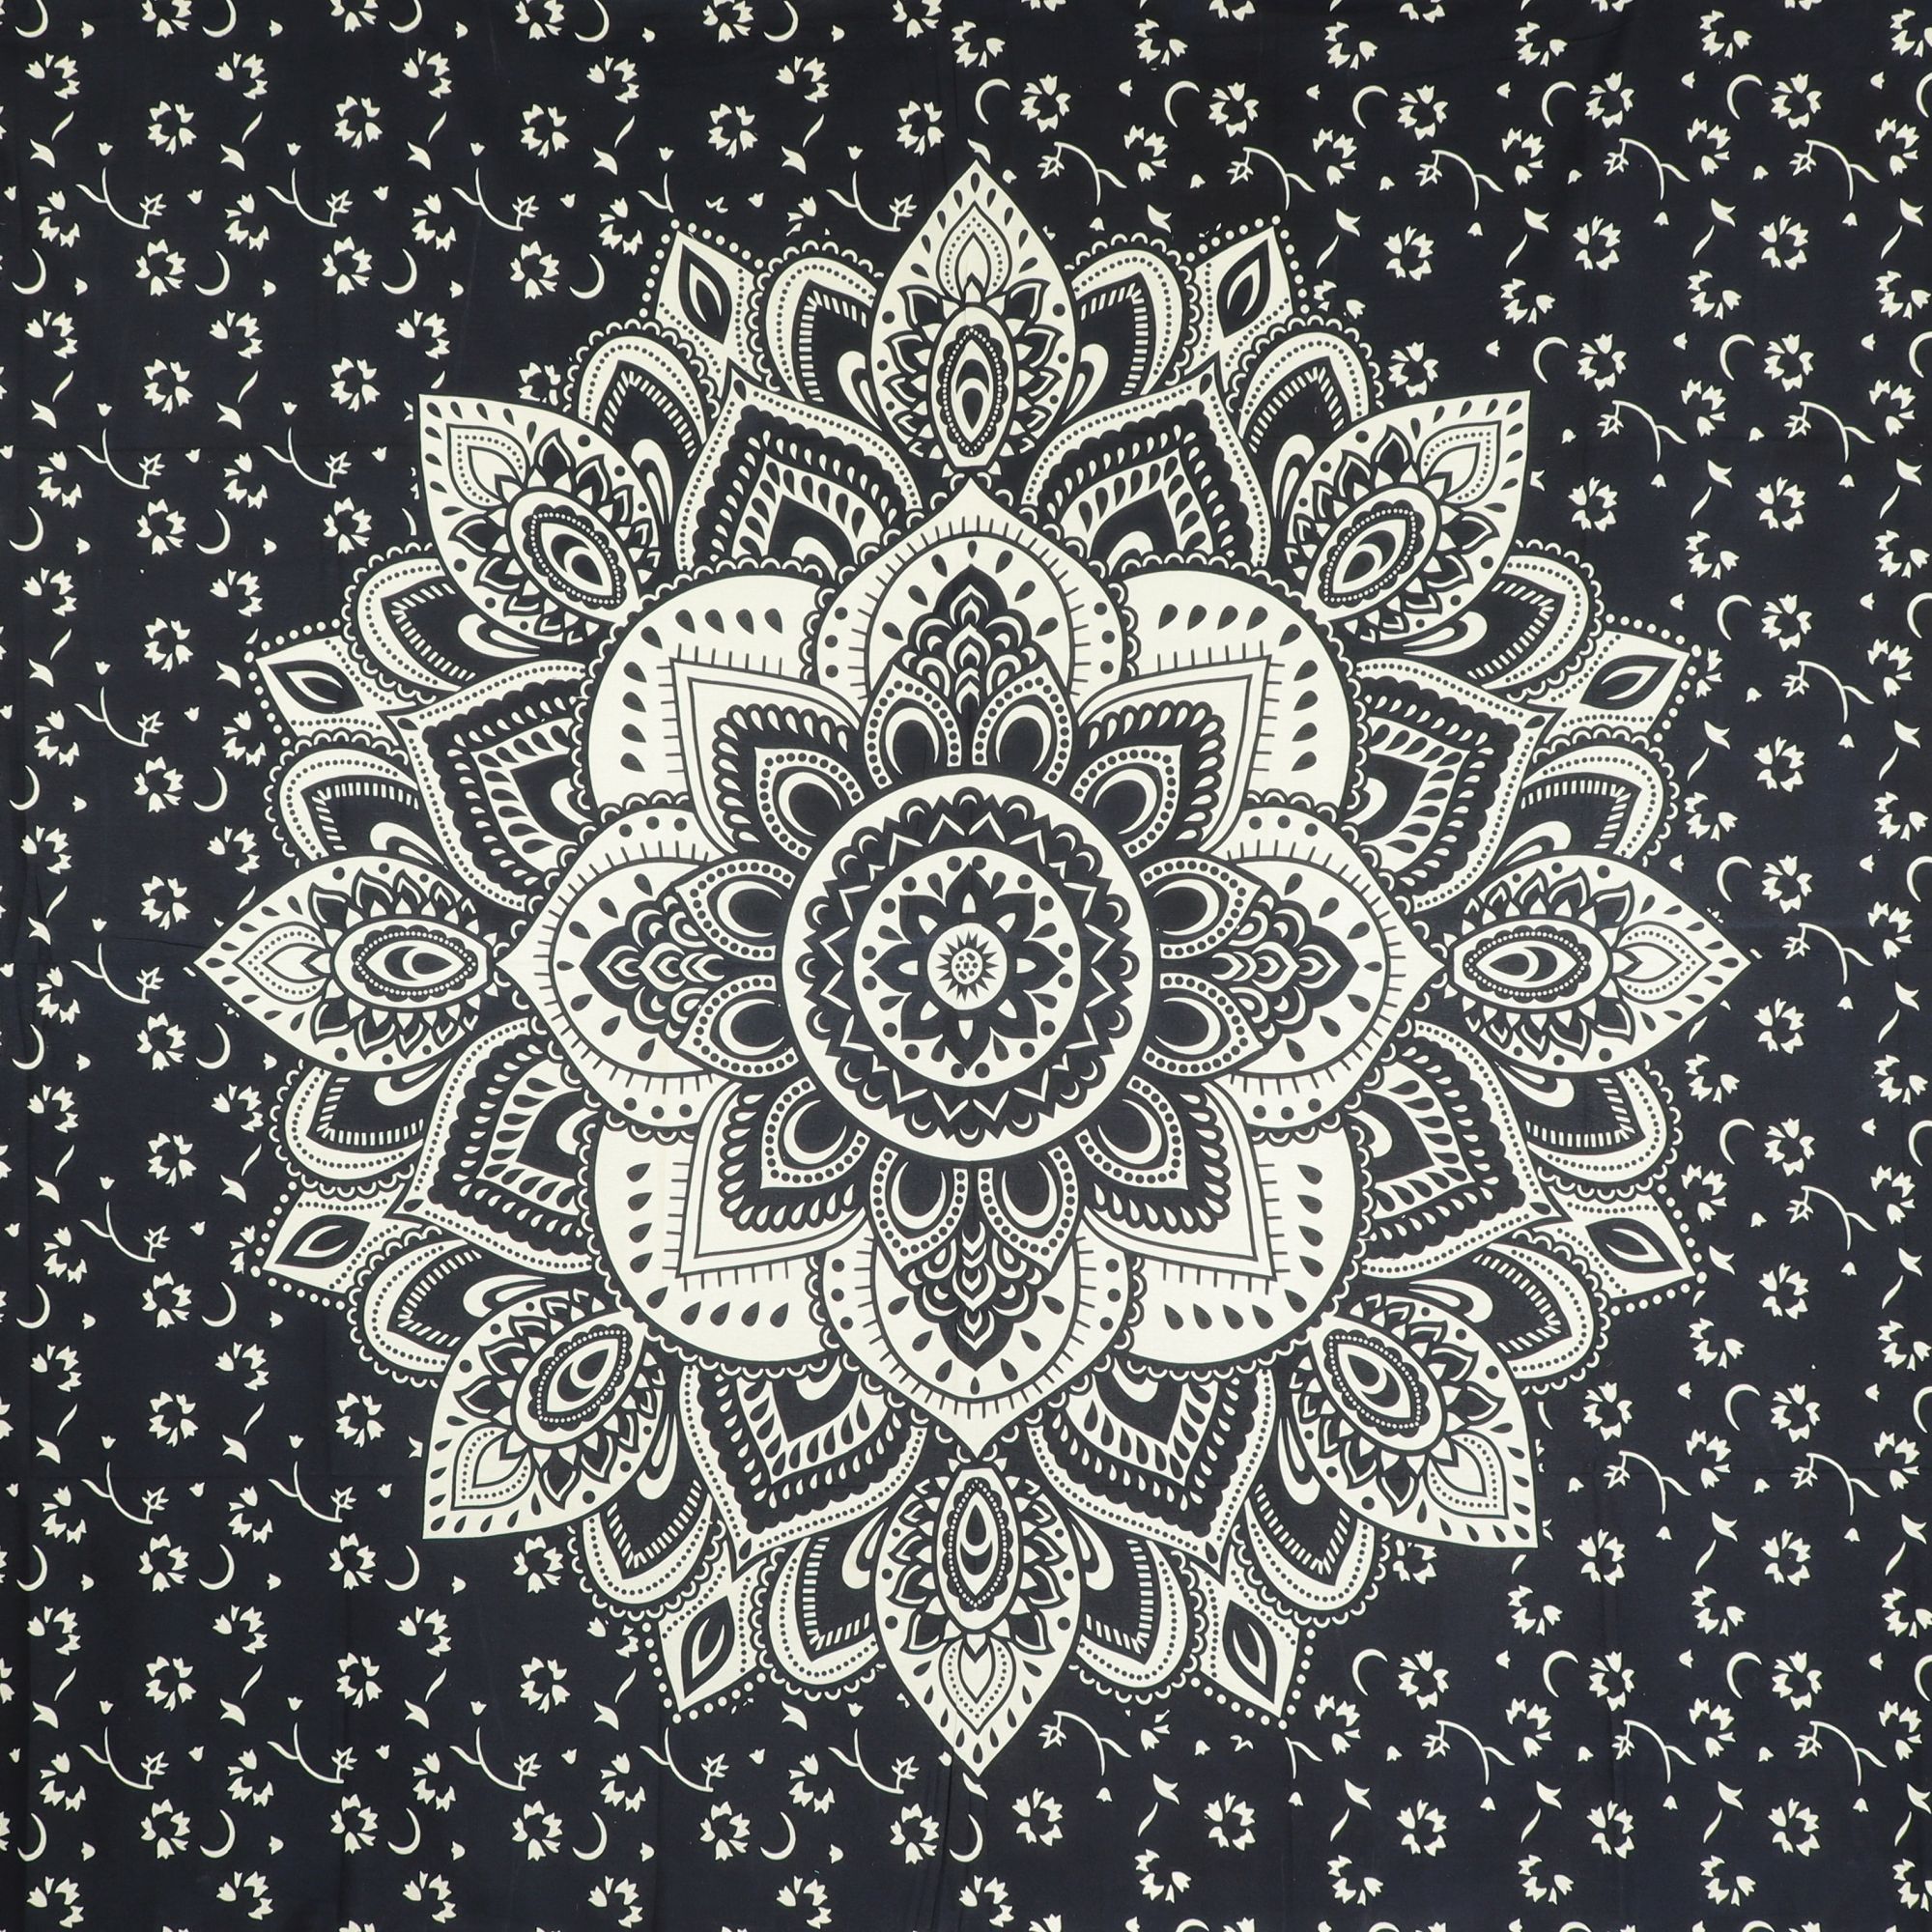 Wandtuch XXL 210x230 - Mandala Lotus - 100% Baumwolle - detailreicher indischer Druck - dekoratives Tuch, Wandbild, Tagesdecke, Bedcover, Vorhang, Picknick-Decke, Strandtuch